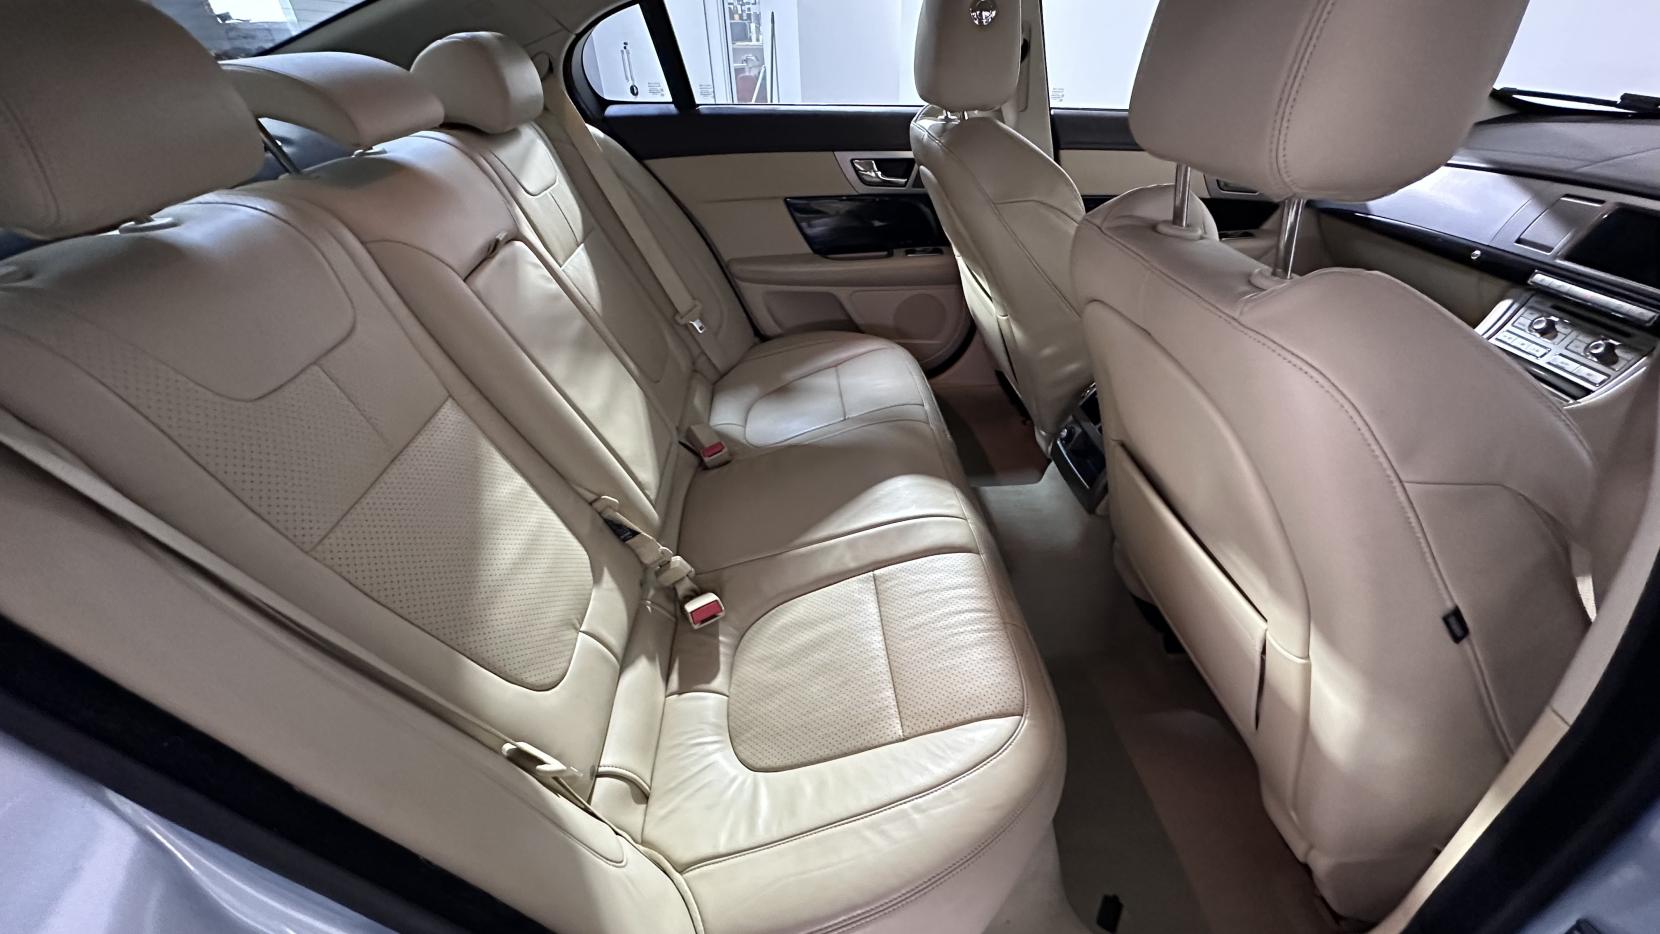 Jaguar XF 3.0d S V6 Premium Luxury Saloon 4dr Diesel Auto Euro 5 (275 ps)